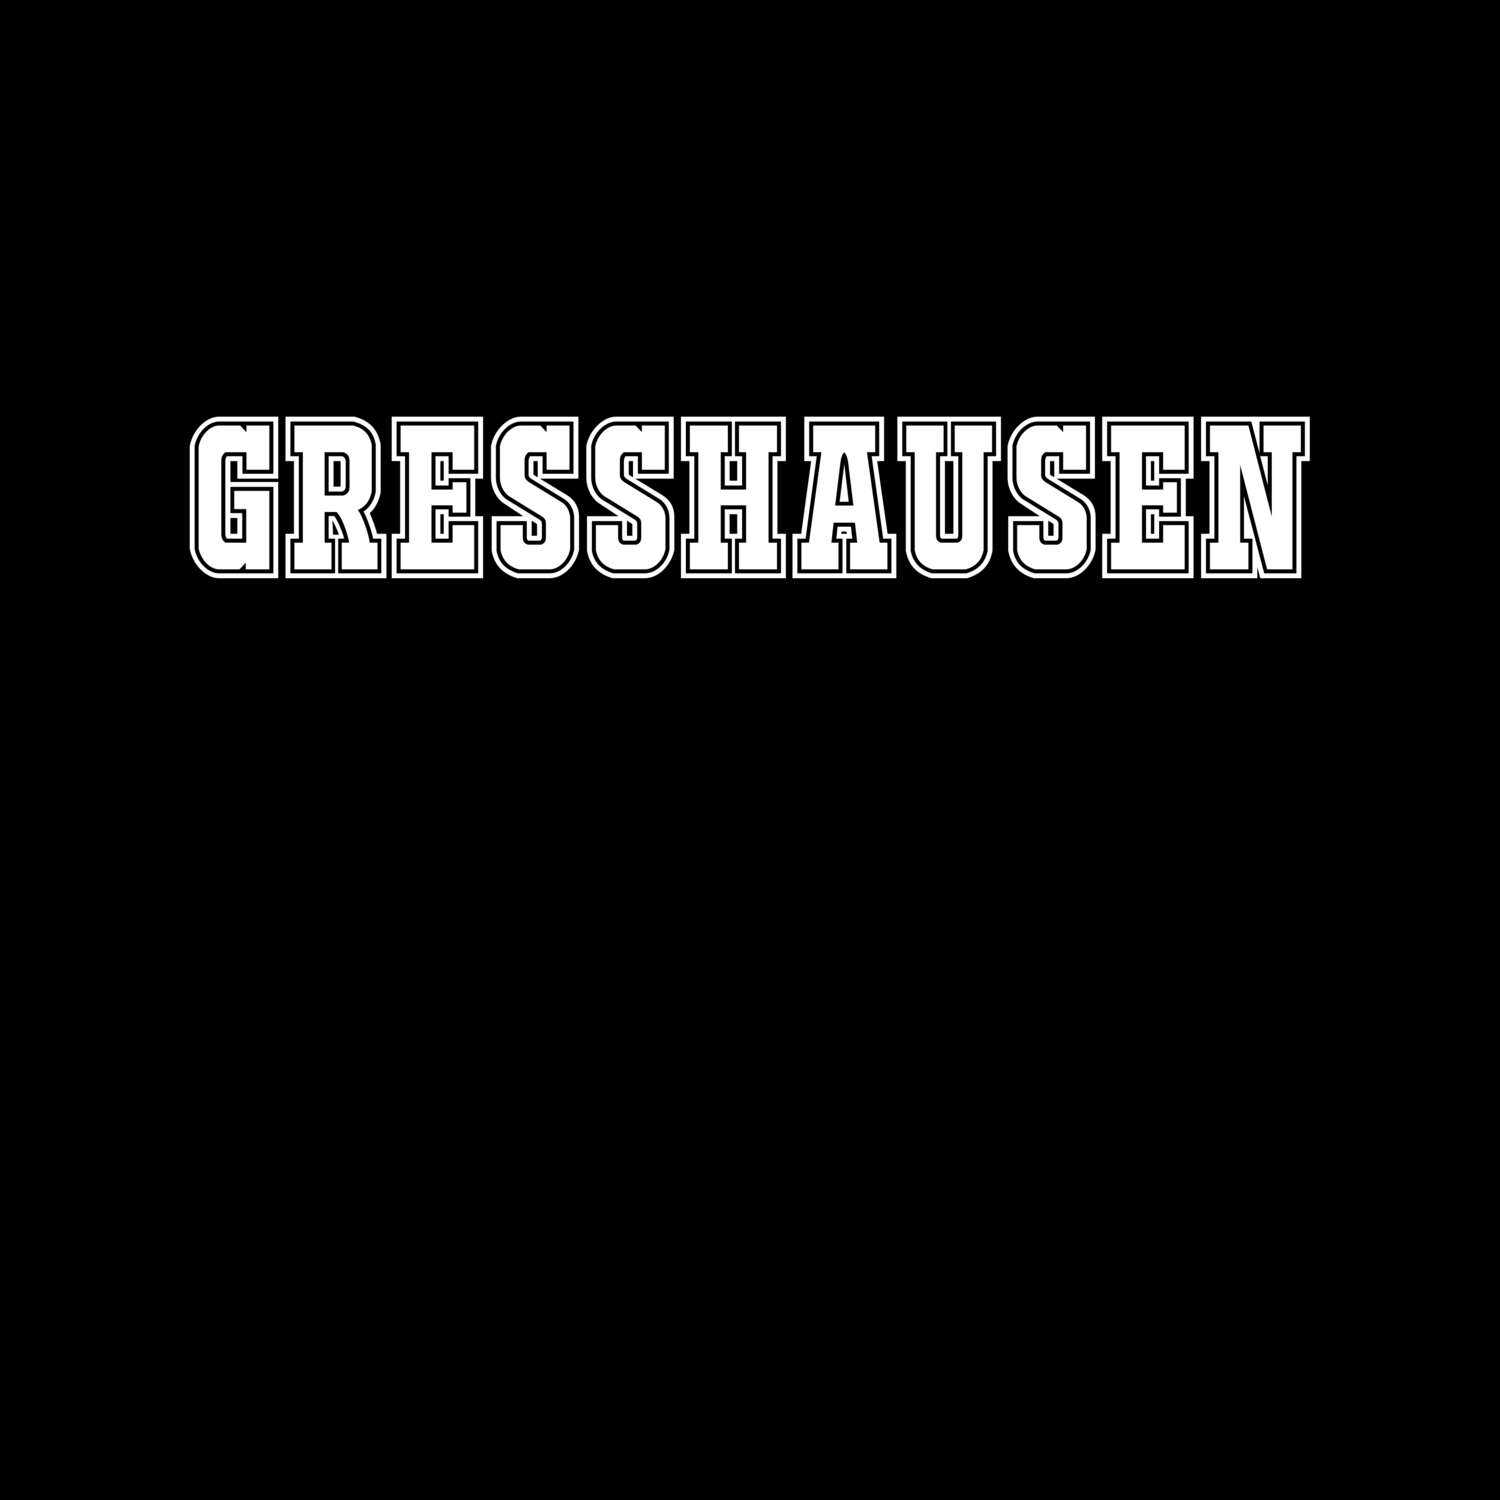 Greßhausen T-Shirt »Classic«